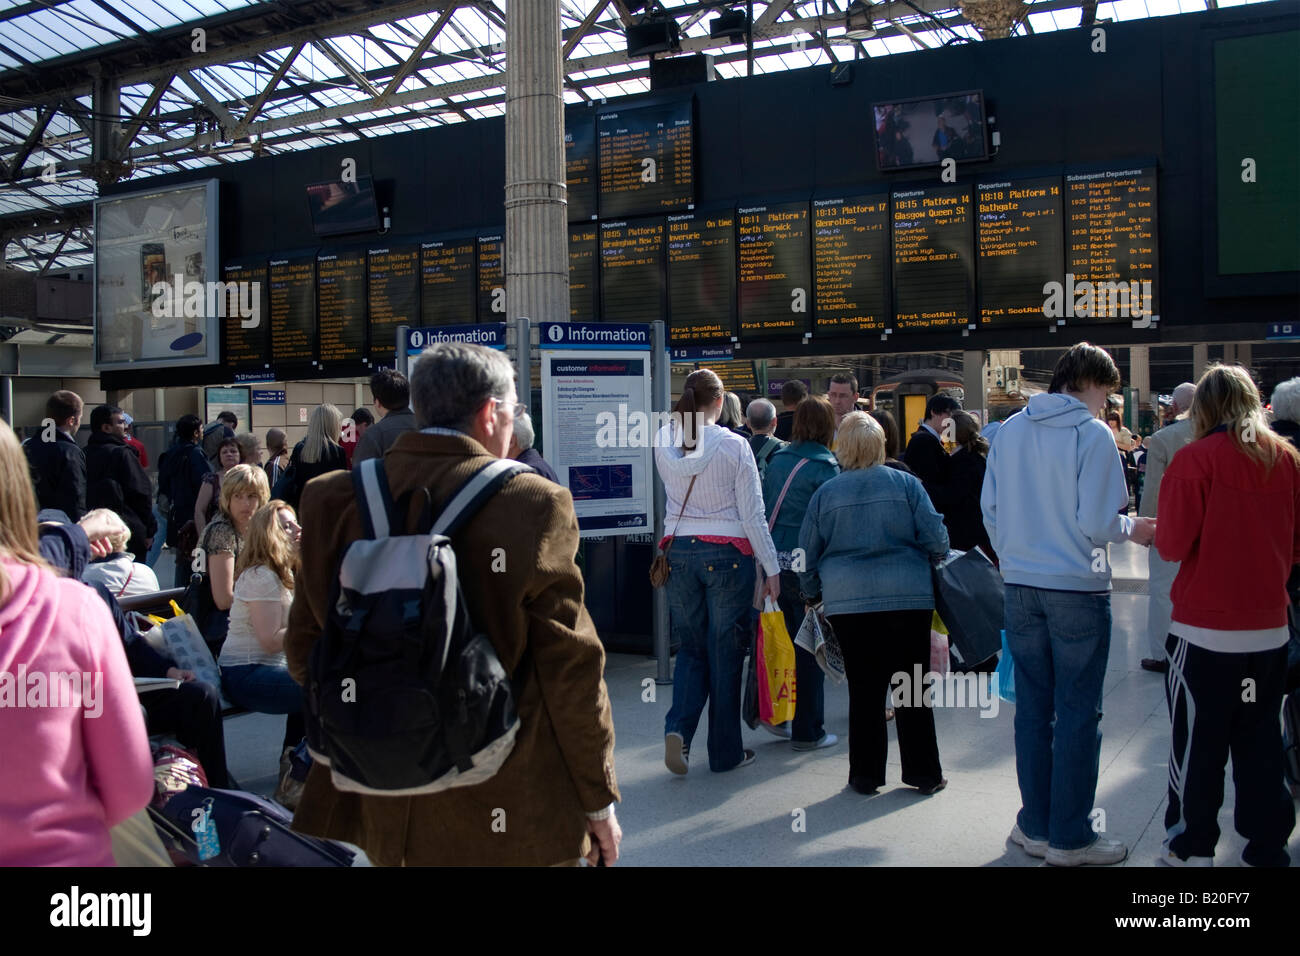 La gare de Waverley dans le centre-ville d'Édimbourg - le portail de la plate-forme et les tableaux d'arrivée et de départ Banque D'Images